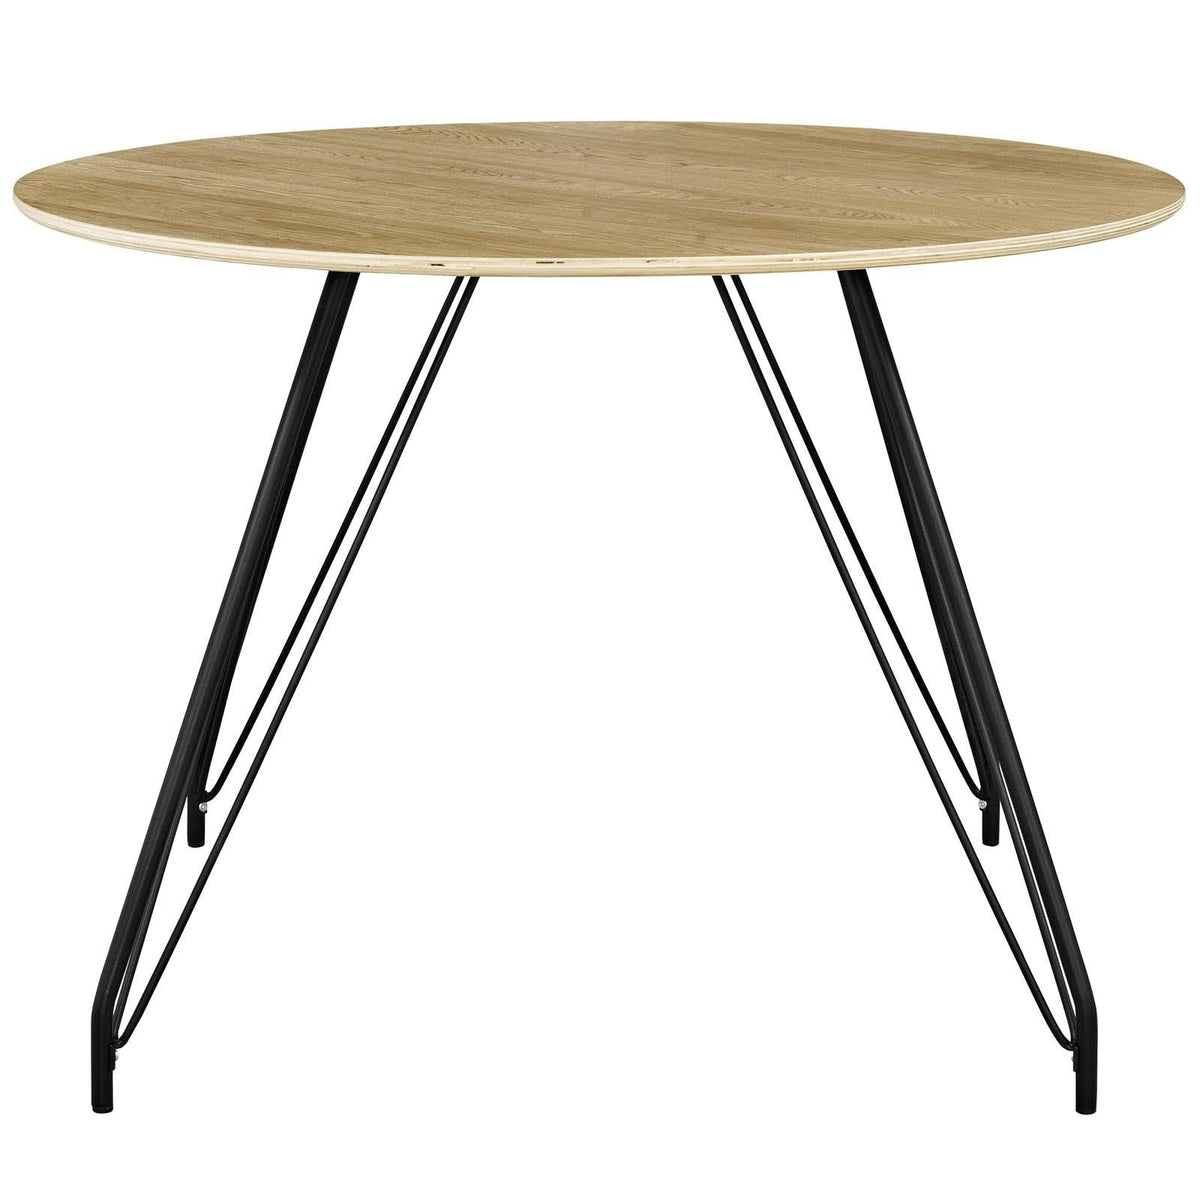 Modway Furniture Modern Satellite Circular Dining Table - EEI-2670